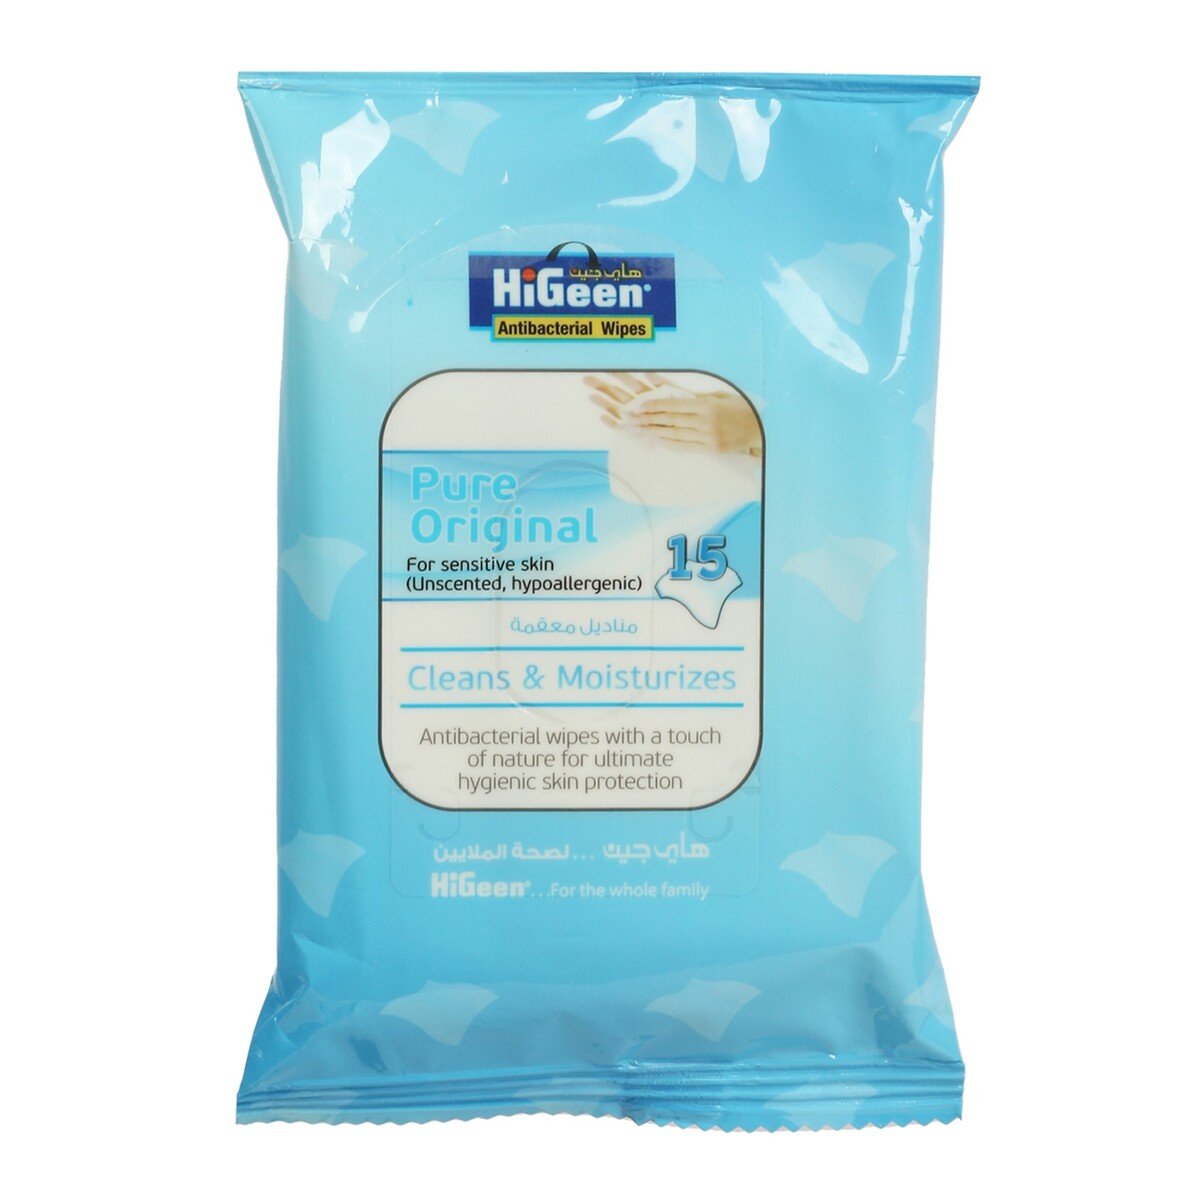 Hi Geen Pure Original For Sensitive Skin Antibacterial Wipes 15 pcs